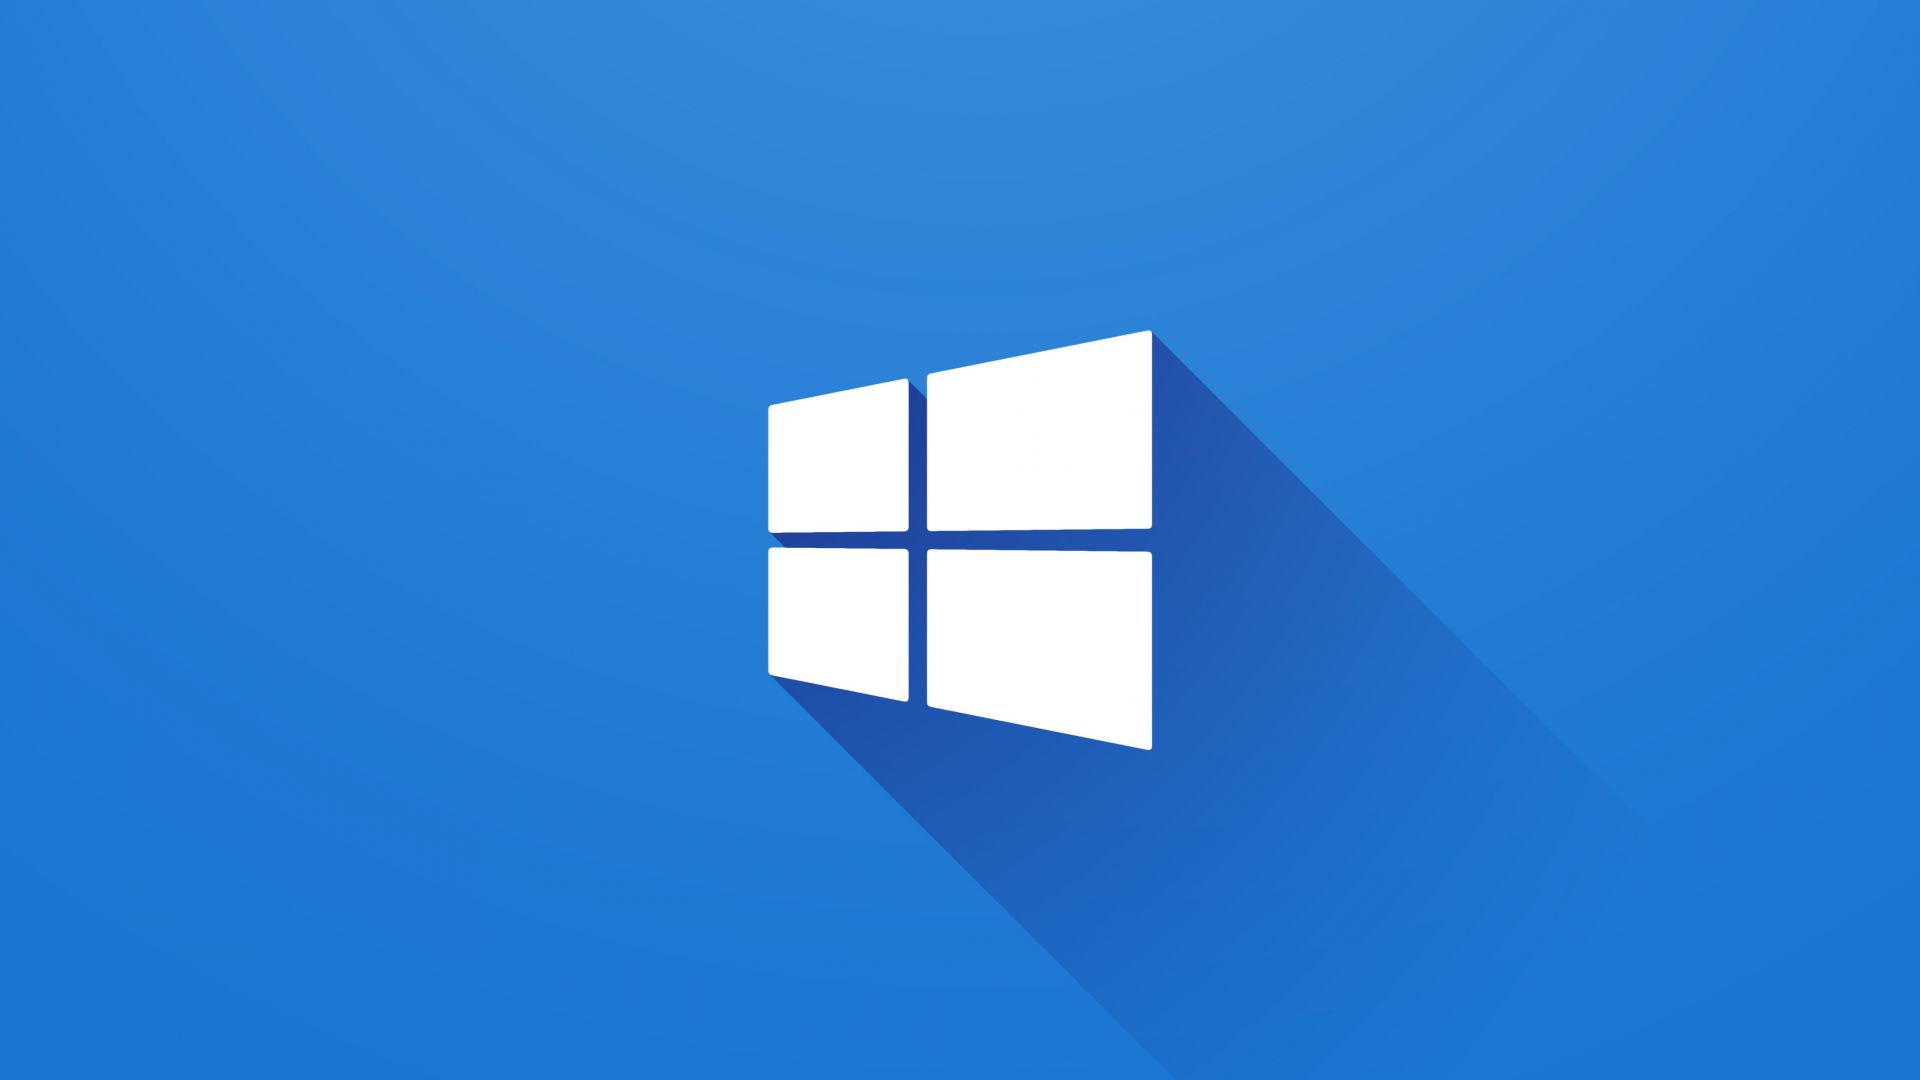 Виндовс 10, 4k, 5k, Майкрософт, синий, Windows 10, 4k, 5k wallpaper, Microsoft, blue (horizontal)